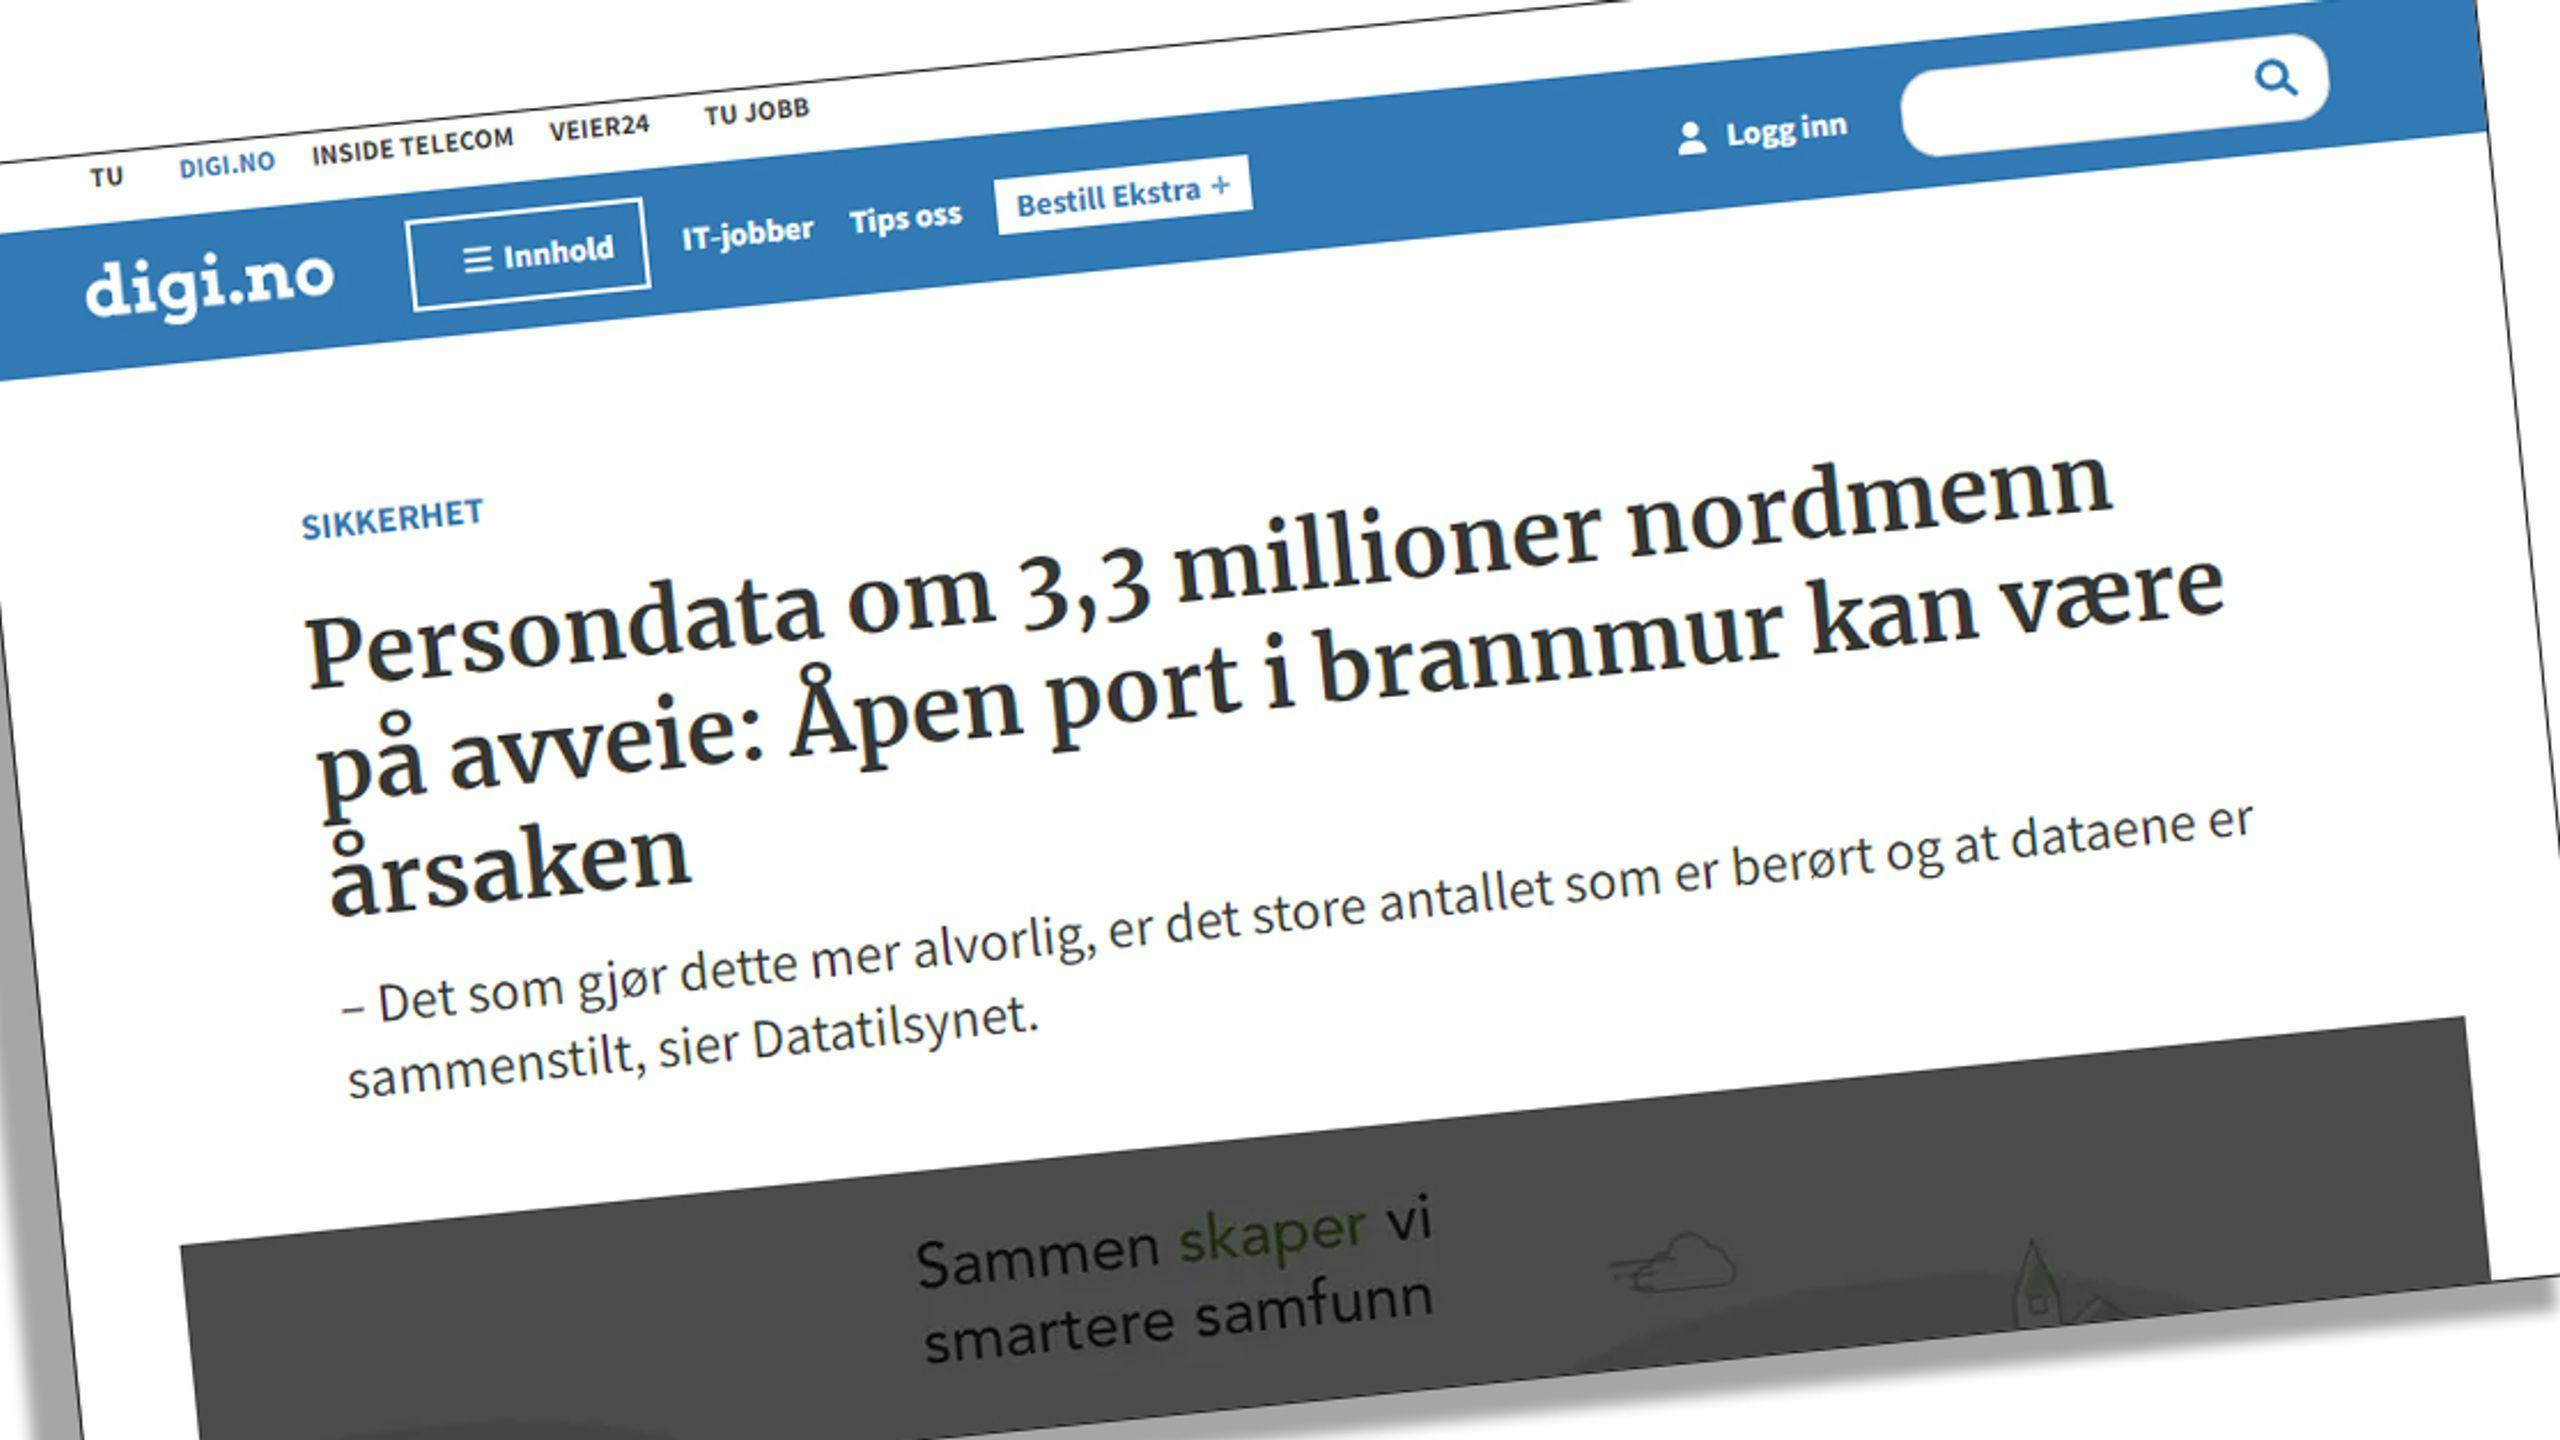 “Persondata om 3,3 millioner nordmenn på avveie!”